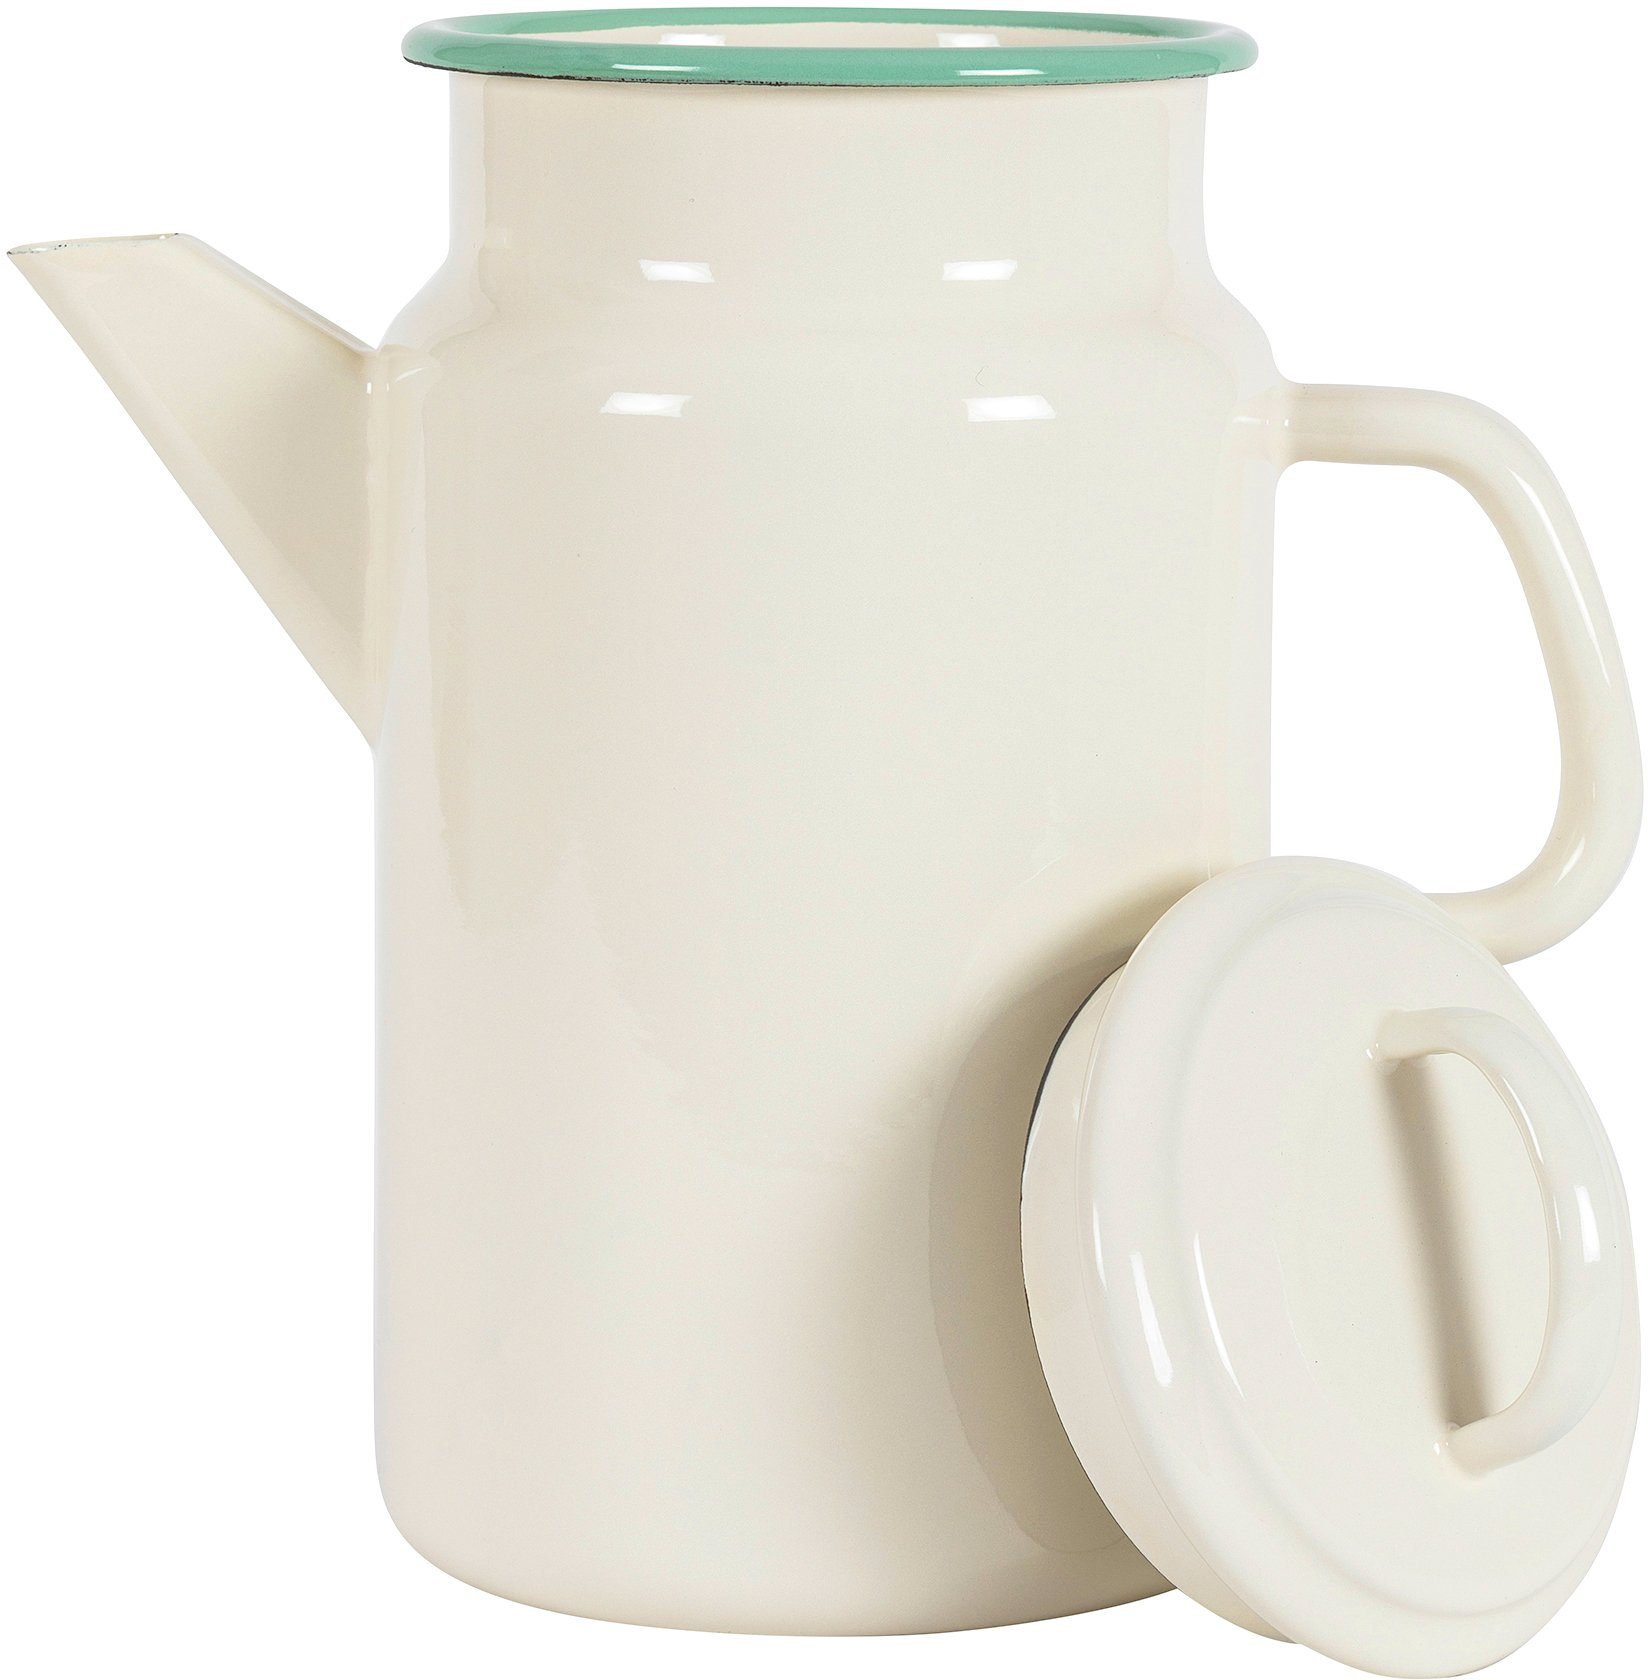 KOCKUMS® Teekanne Jernverk, 2 l, und in Retro-Design Emaille, vereint Teekanne Nachhaltigkeit einer beige